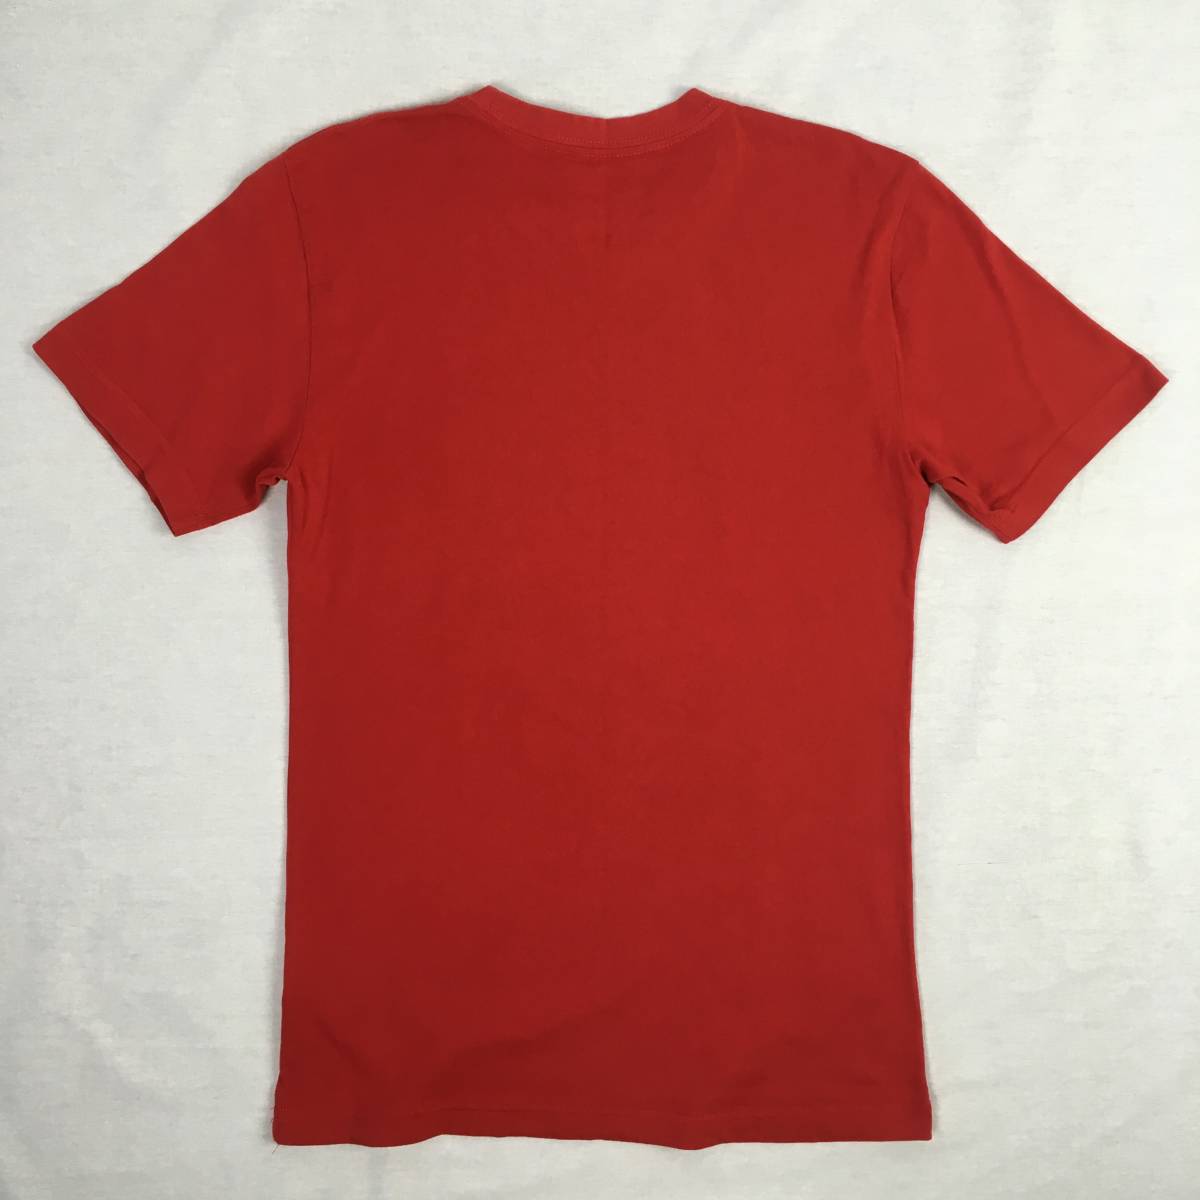 NIKE ナイキ DOMINATION Tシャツ グラフィック ロゴ 赤 レッド Sサイズ